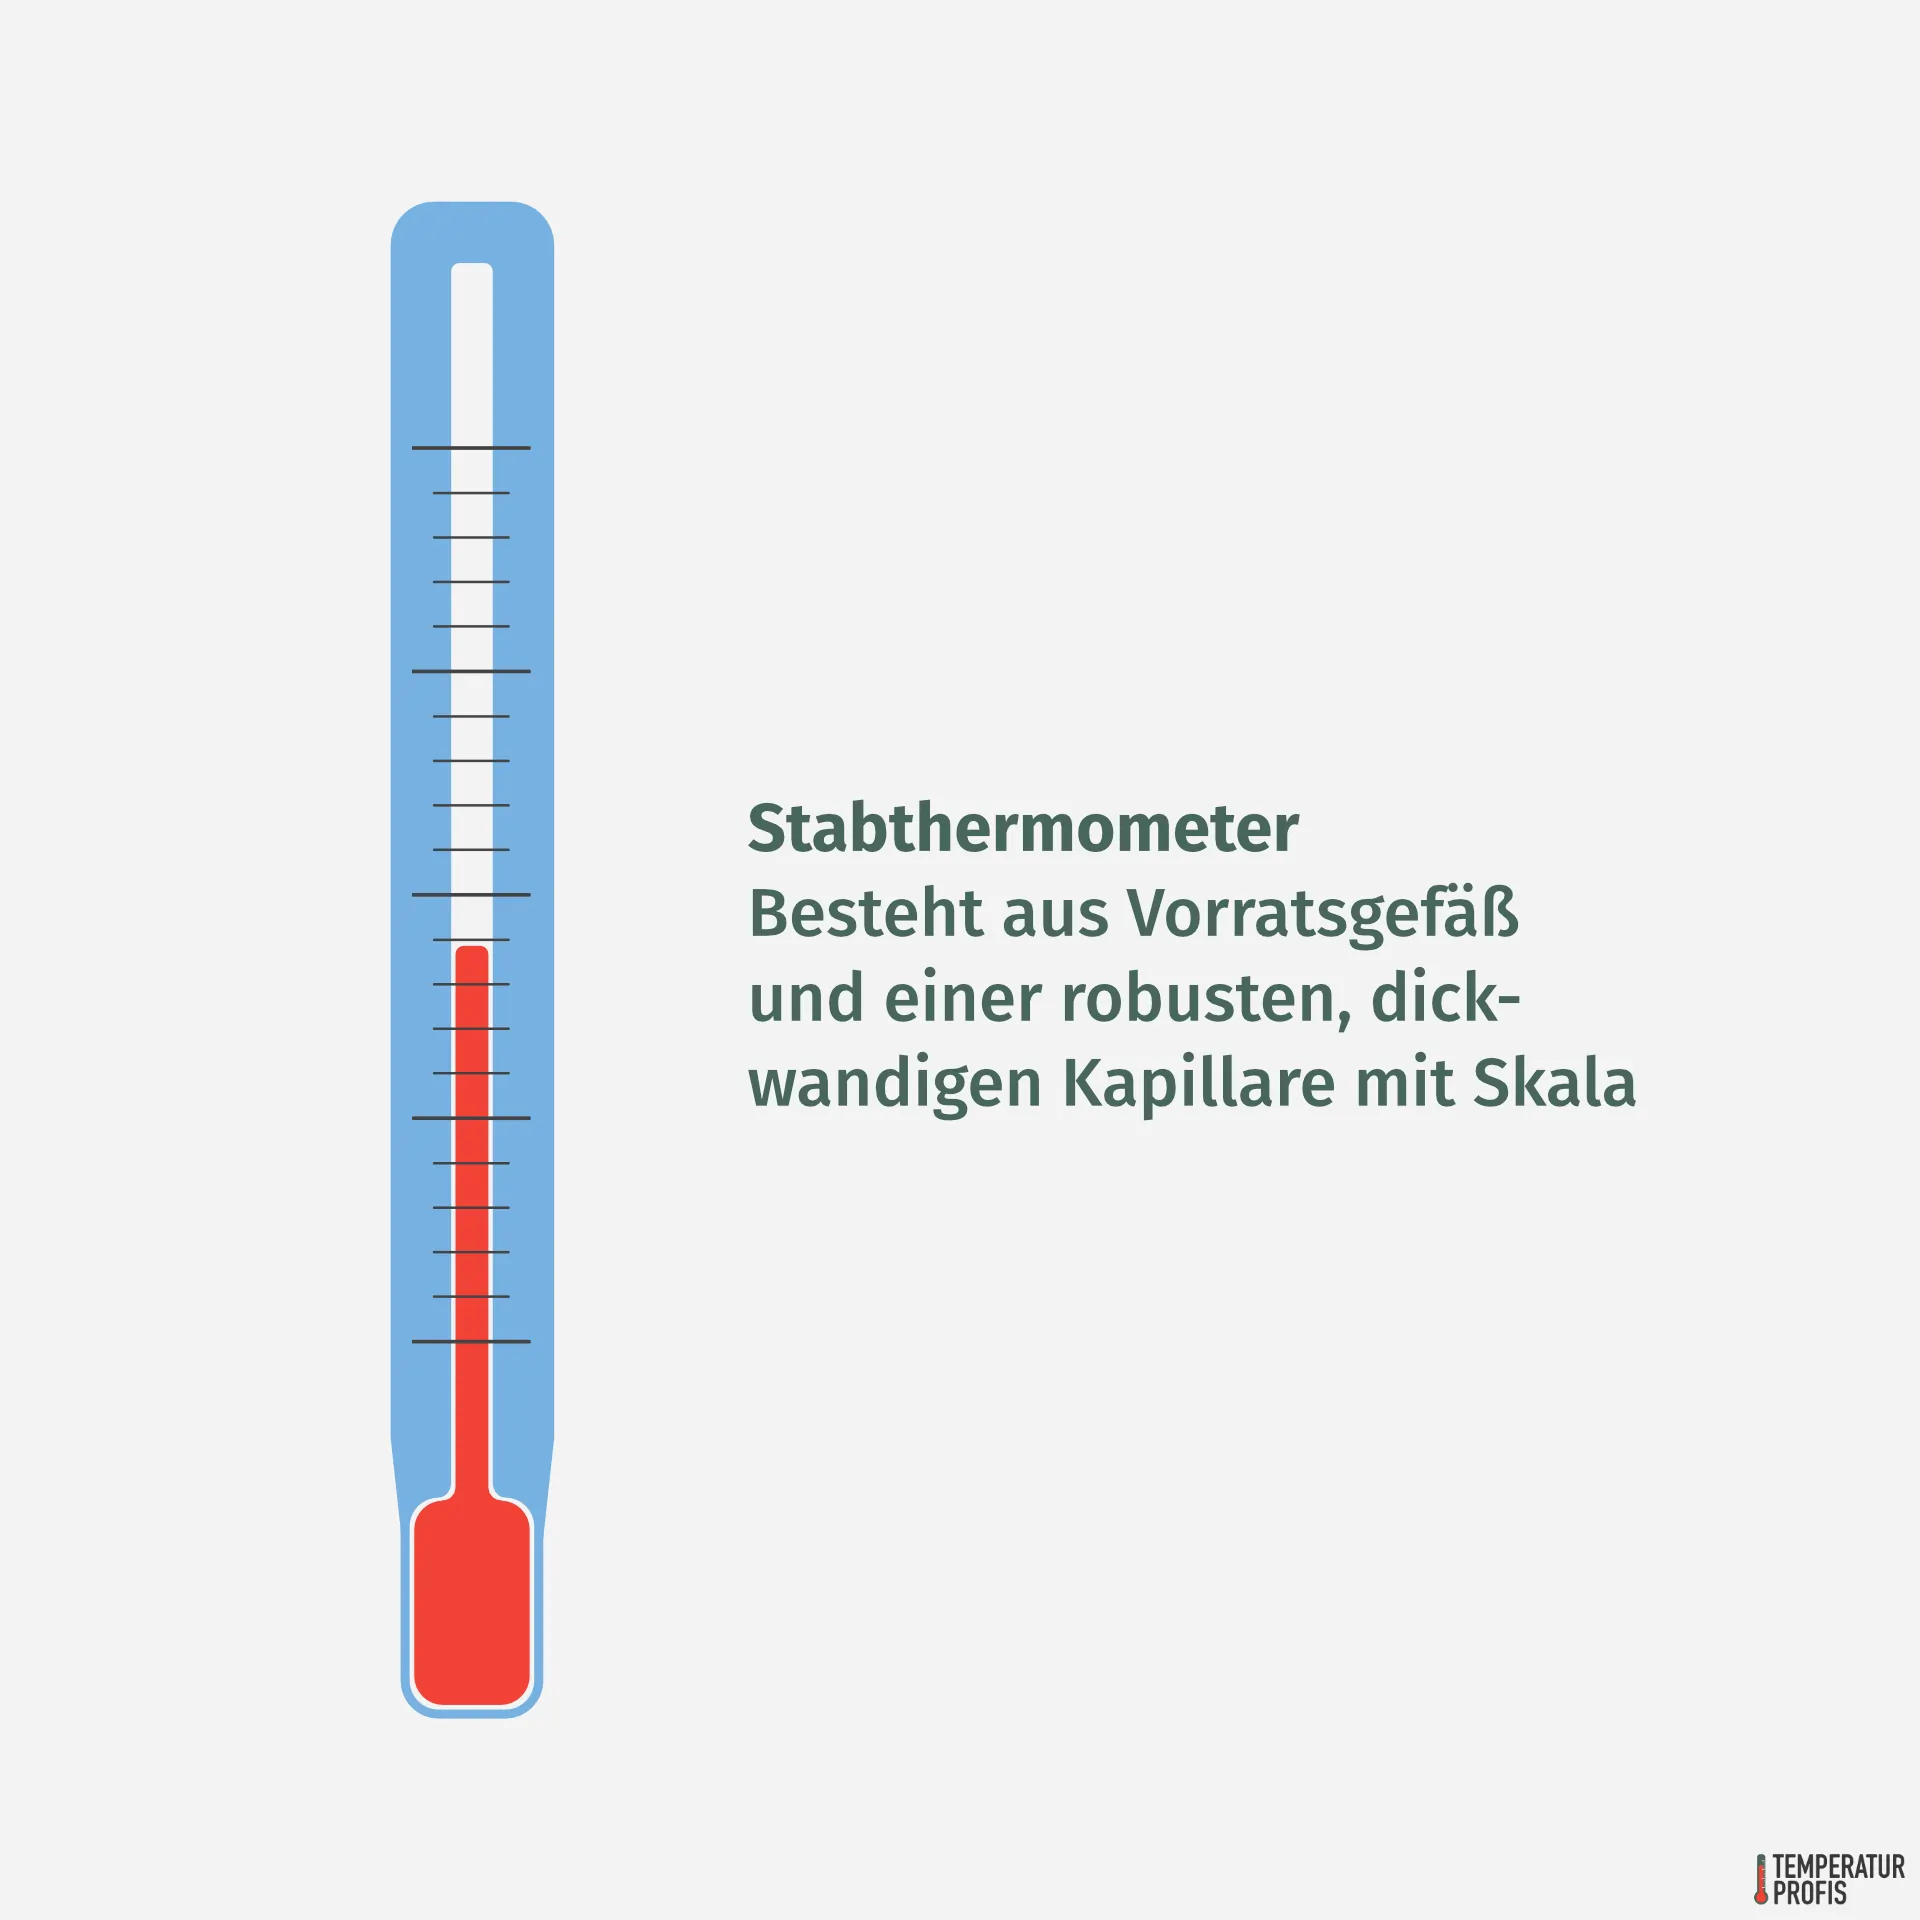 Thermometer Arten: Stabthermometer haben eine besonders robuste, dickwandige Kapillare